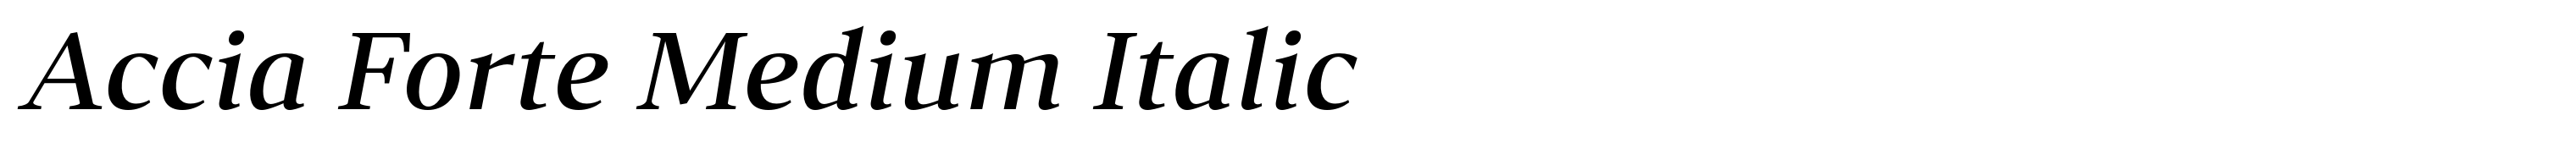 Accia Forte Medium Italic